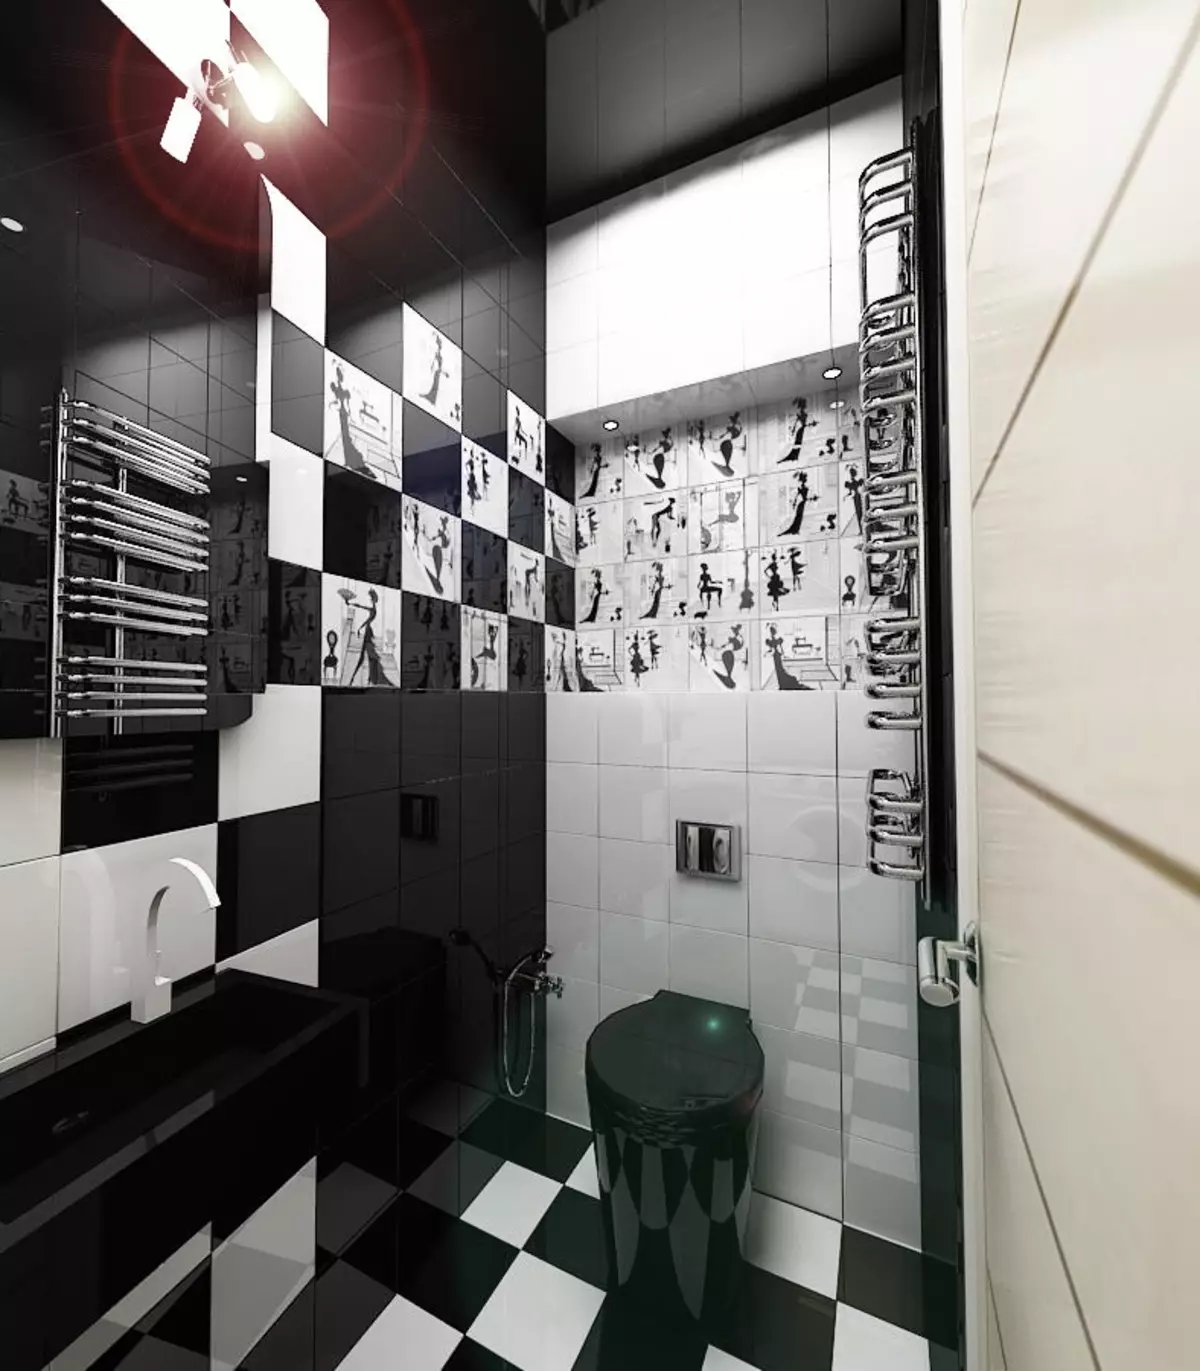 काळा शौचालय (67 फोटो): काळ्या आणि पांढर्या रंगात शौचालय डिझाइन, एका अपार्टमेंटमध्ये गडद रंगाचा शौचालय निवड, काळा आणि लाल टाइलसह समाप्त करणे 10501_22